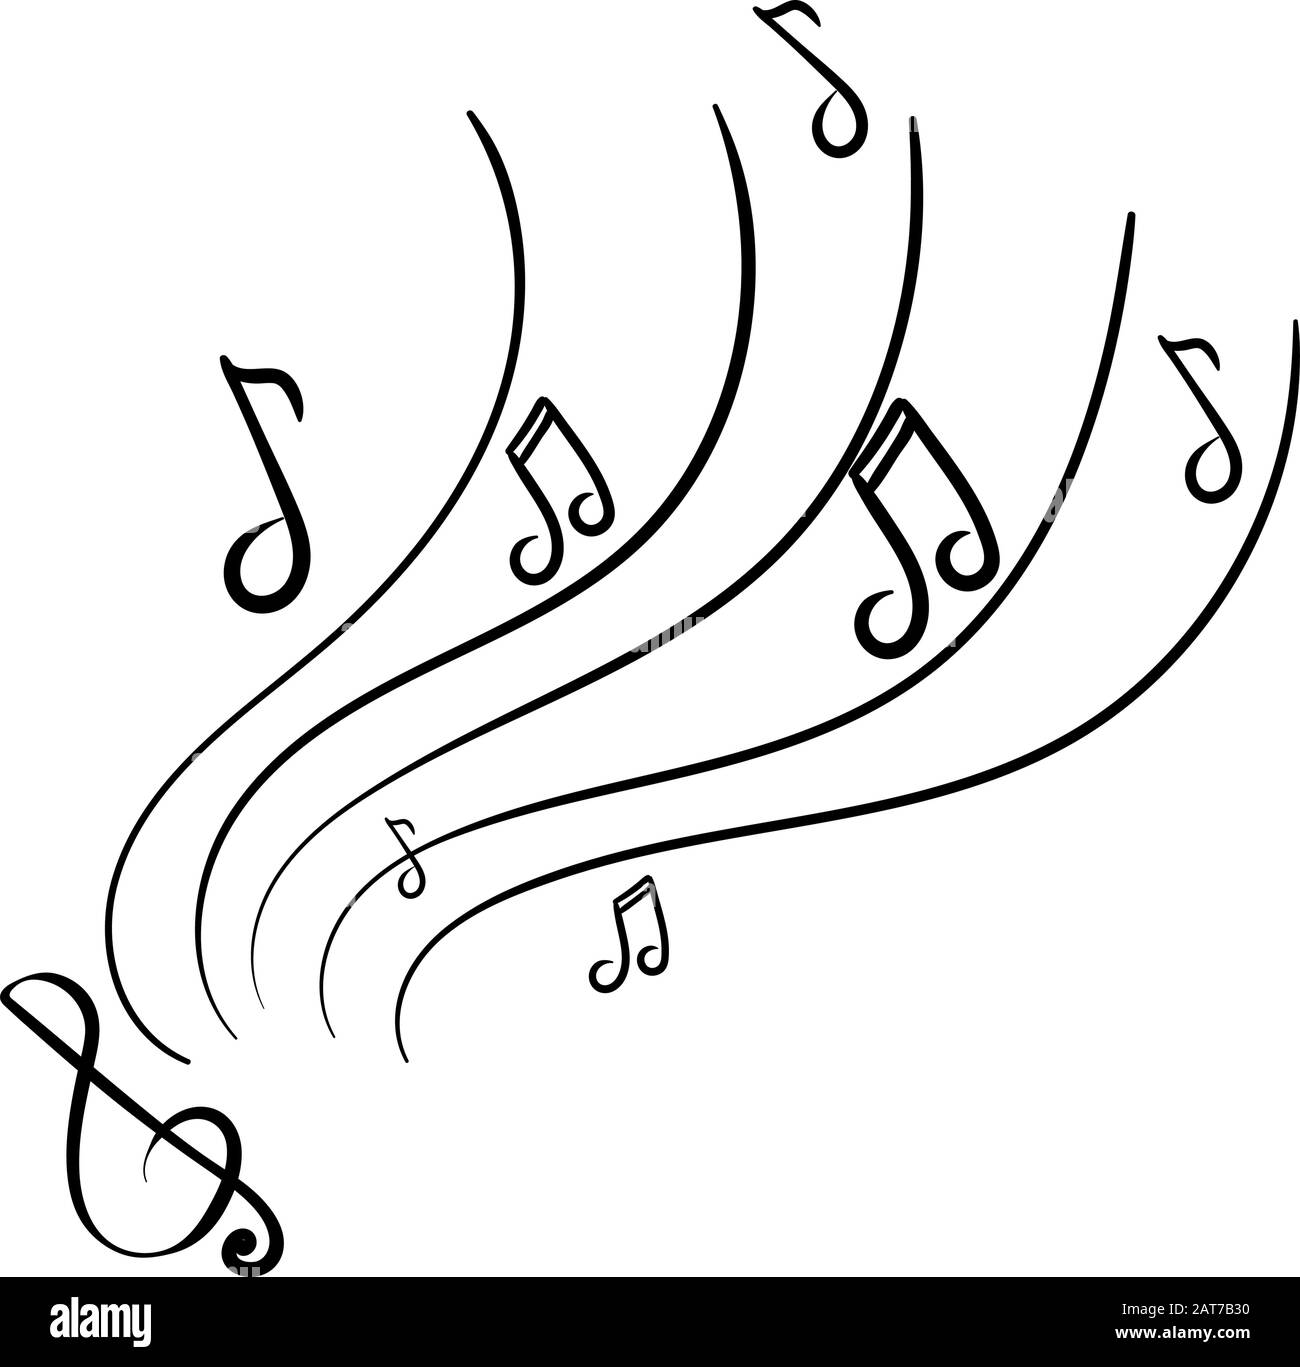 Musik, Noten, Violinschlüssel. Konzept des Hörens oder Übens von Musik. Lineare Schwarz-Weiß-Grafiken Stock Vektor